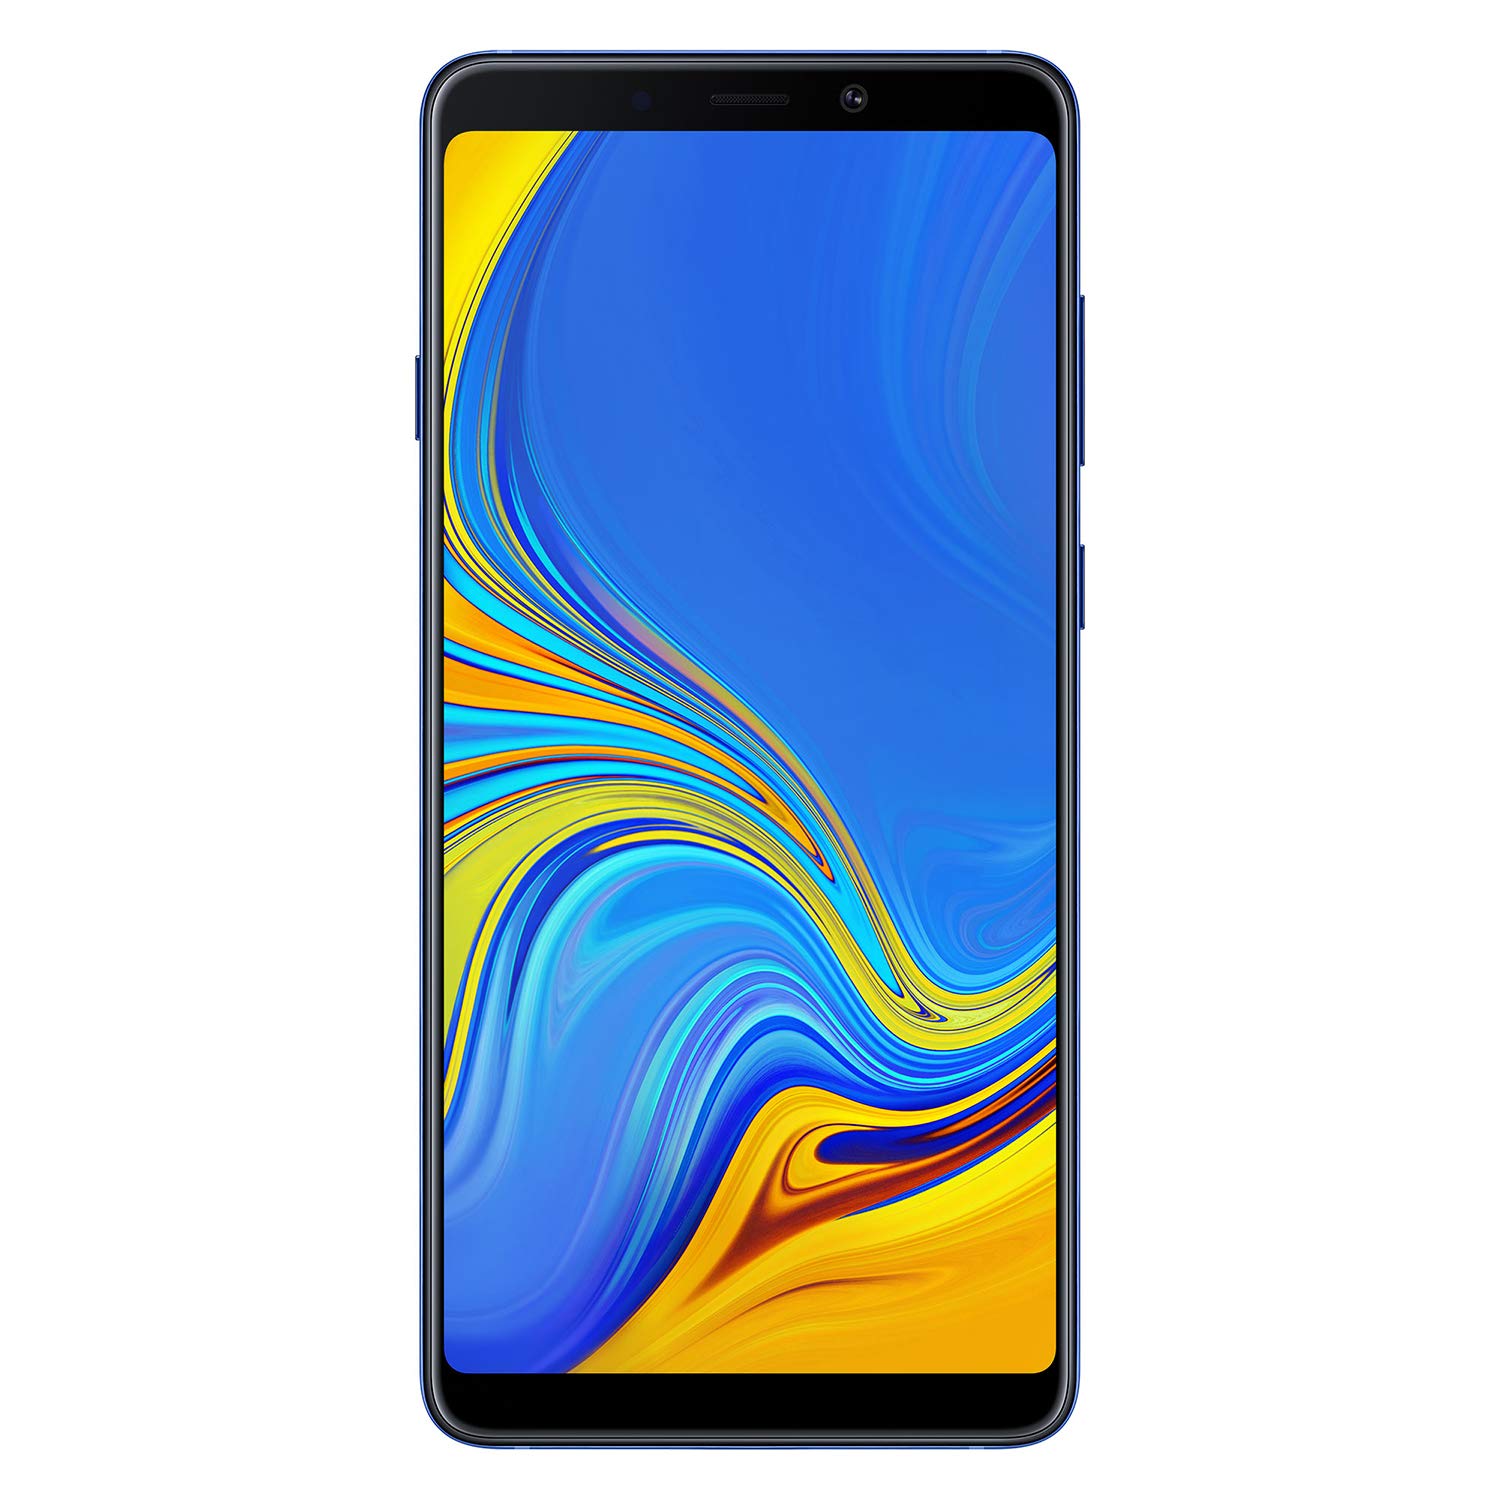 Samsung Galaxy SM-A920F 16 cm (6.3" ) 6 GB 128 GB Dual-SIM Blau 3800 mAh ()